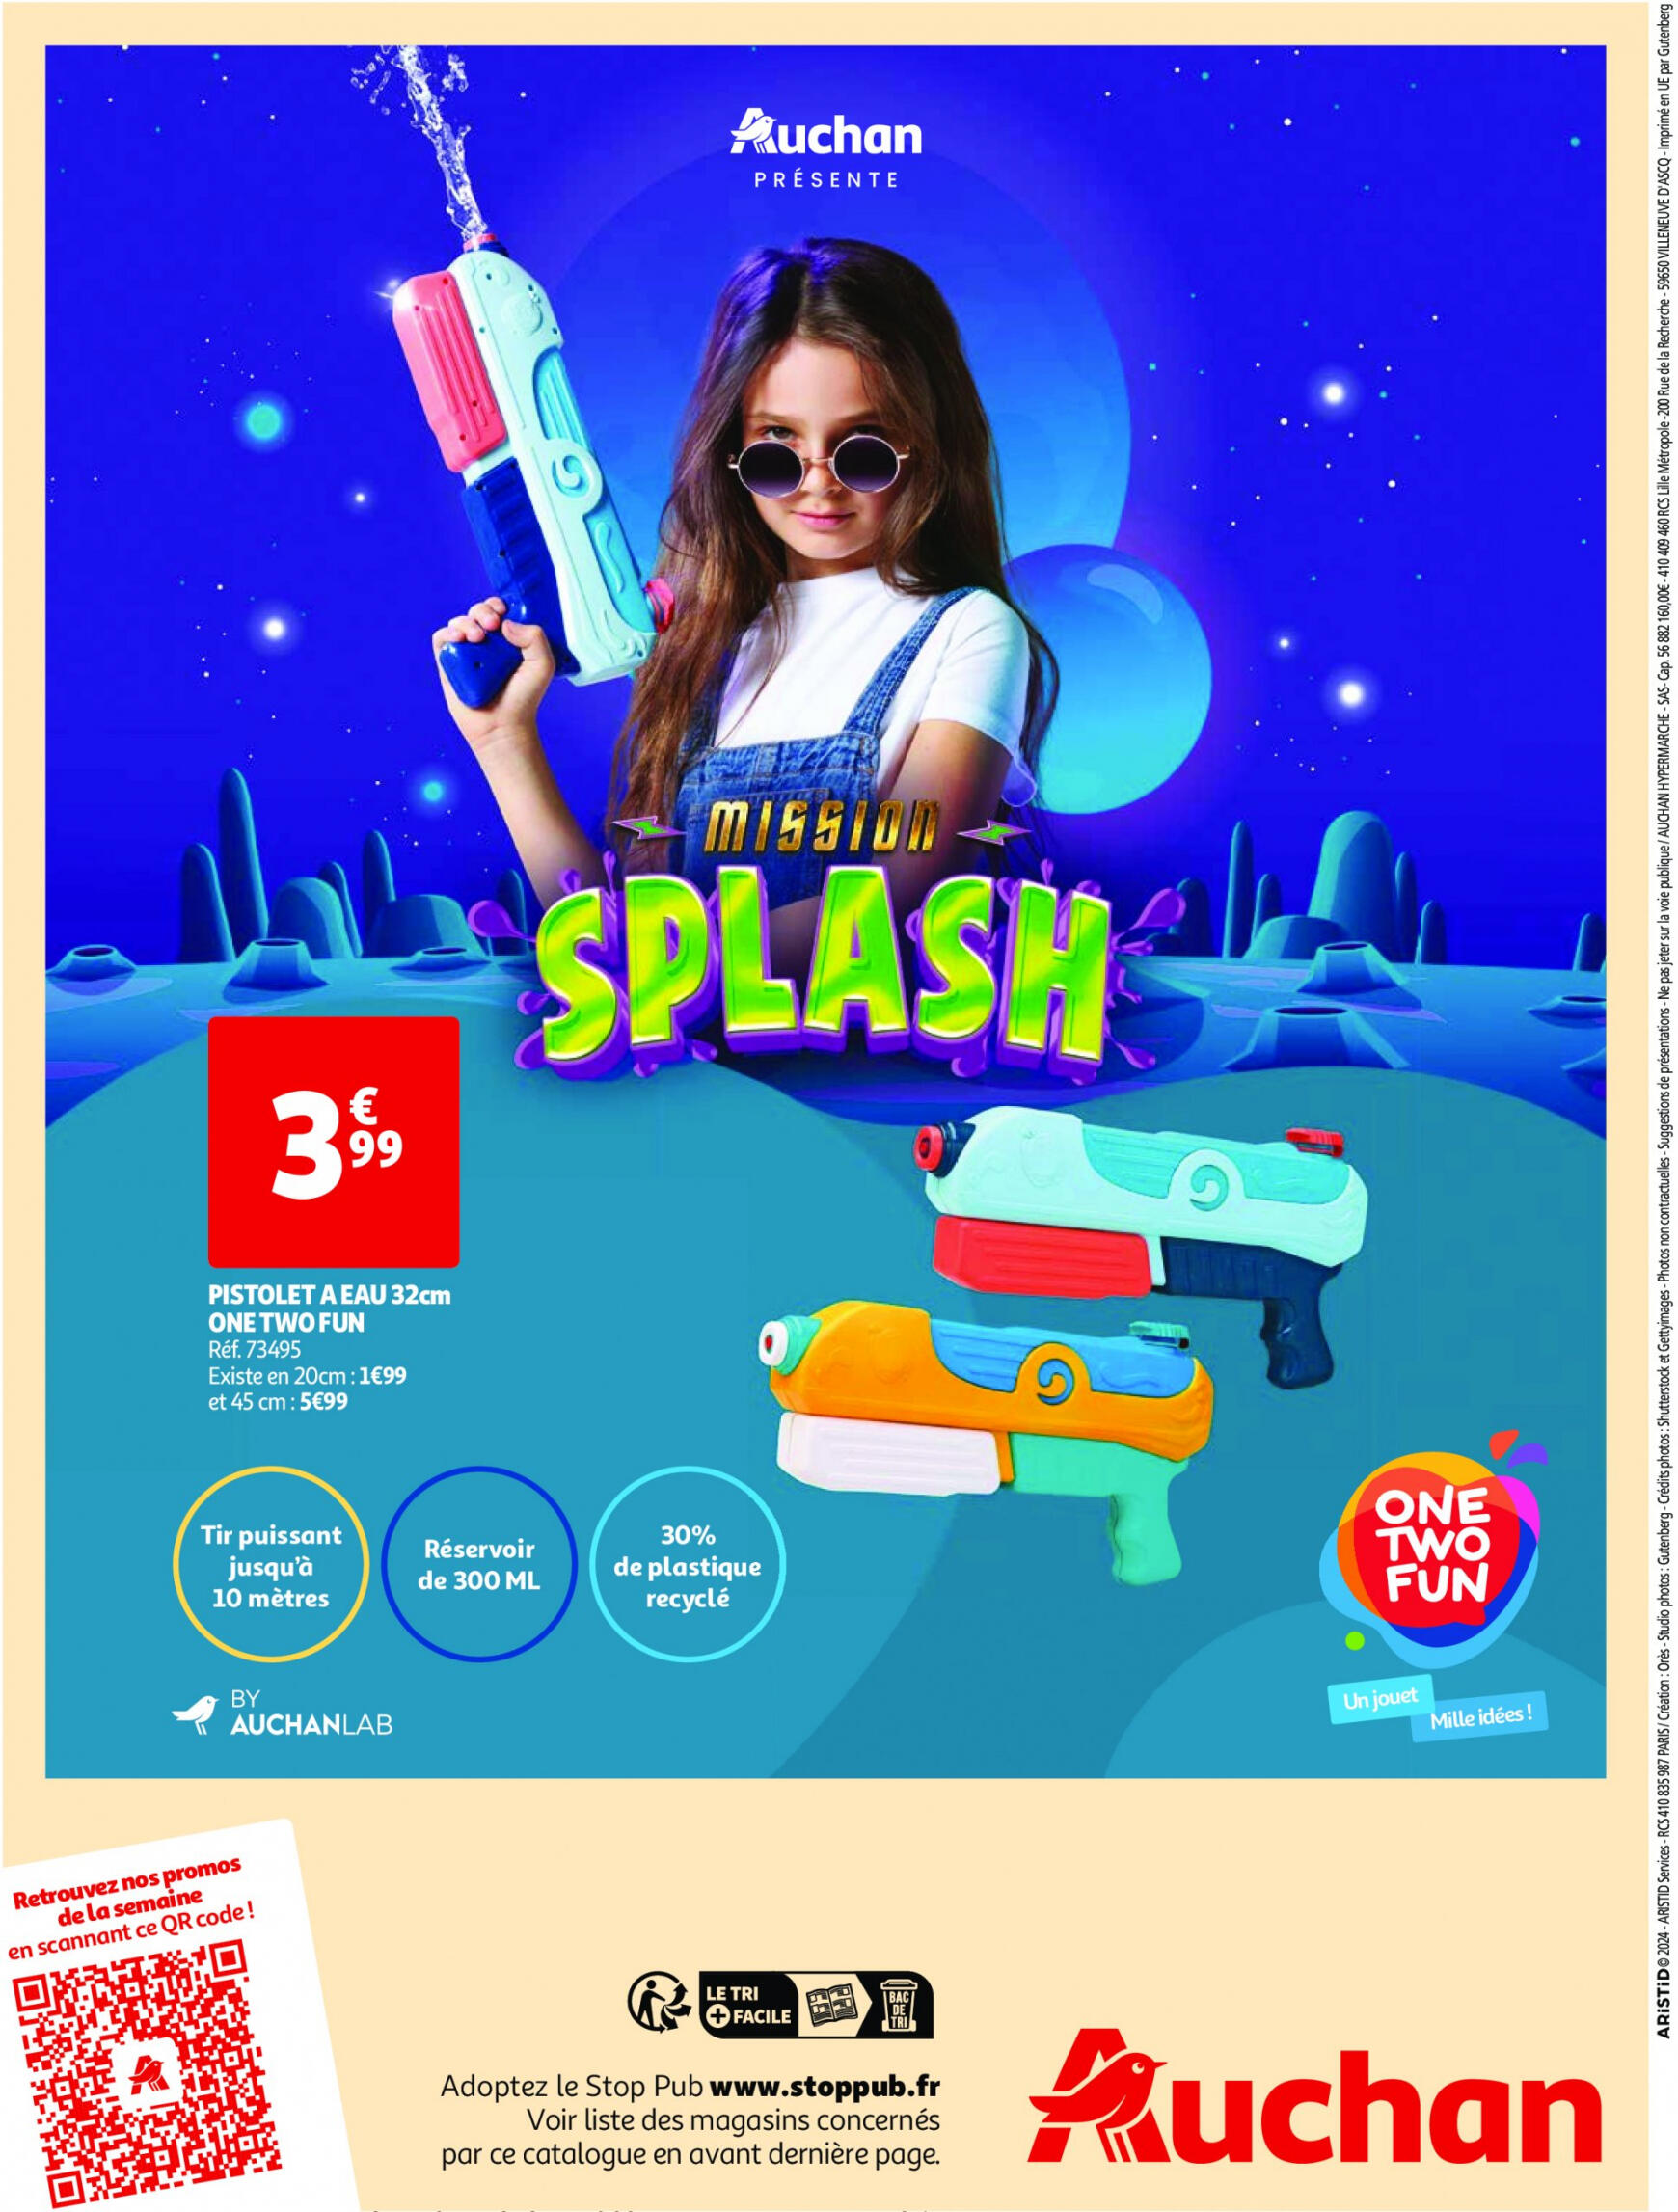 auchan - Auchan - Nos exclusivités Summer pour s'amuser tout l'été folder huidig 14.05. - 15.06. - page: 20